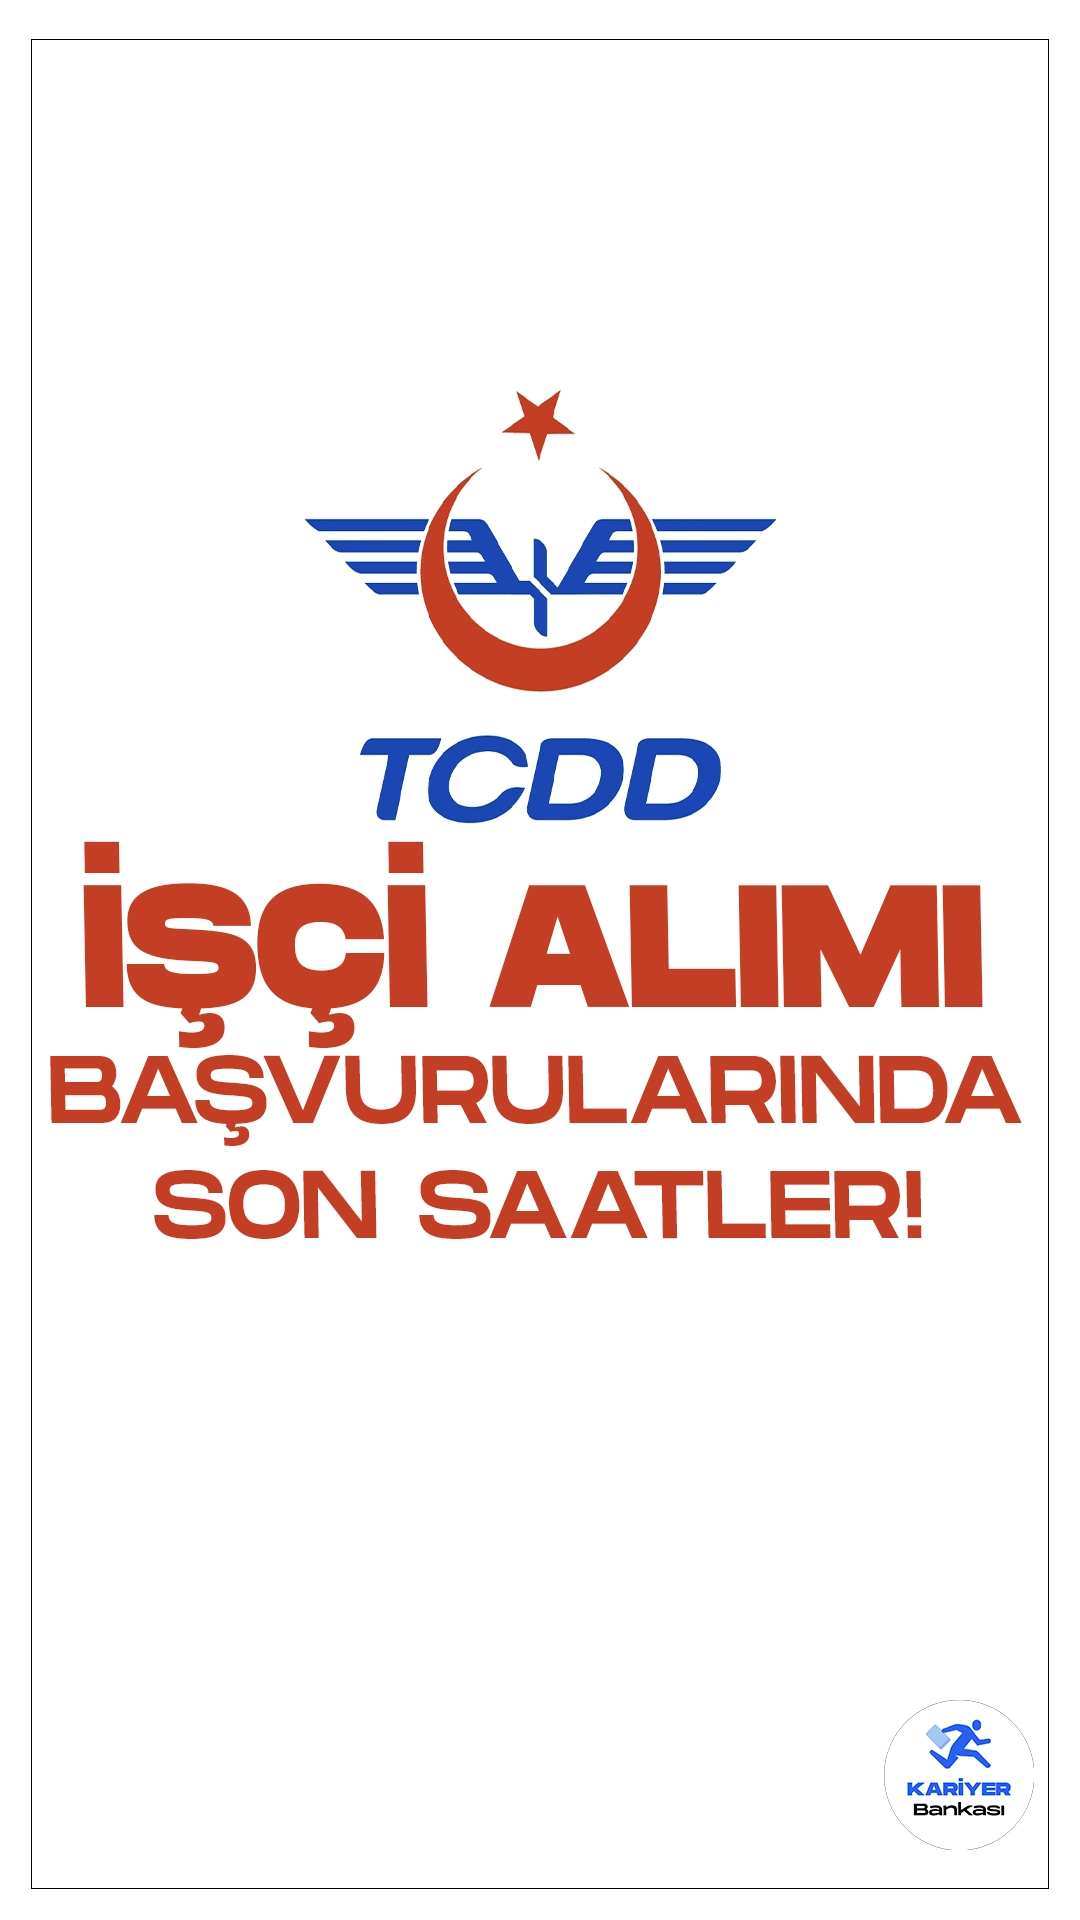 Türkiye Cumhuriyeti Devlet Demiryolları (TCDD) işçi alımı başvuruları sona eriyor.Cumhurbaşkanlığı SBB'de ve İŞKUR üzerinden yayımlanan duyurulara göre, TCDD’ye sürekli işçi alımı yapılacak.Başvurular bugün (22 Aralık) sona eriyor. Başvuru yapacak belitilen şartları sağlaması gerekmektedir.